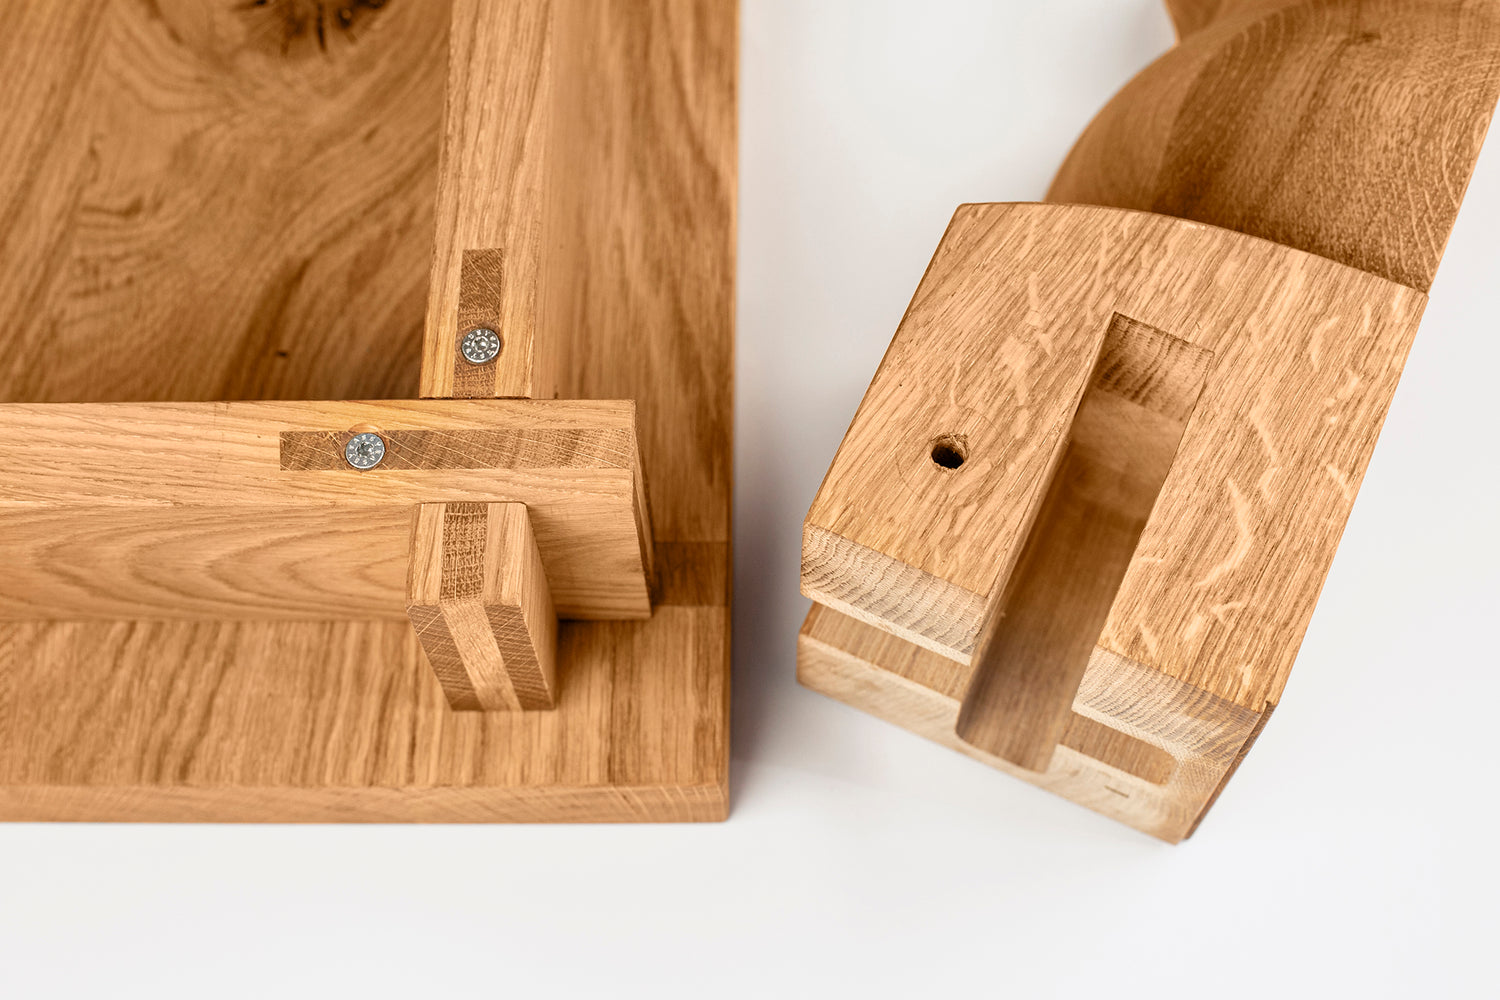 Klassische Holzverbindung im Tischlerhandwerk: Überblattung und Gratleiste und ein gedrechseltes Tischbein